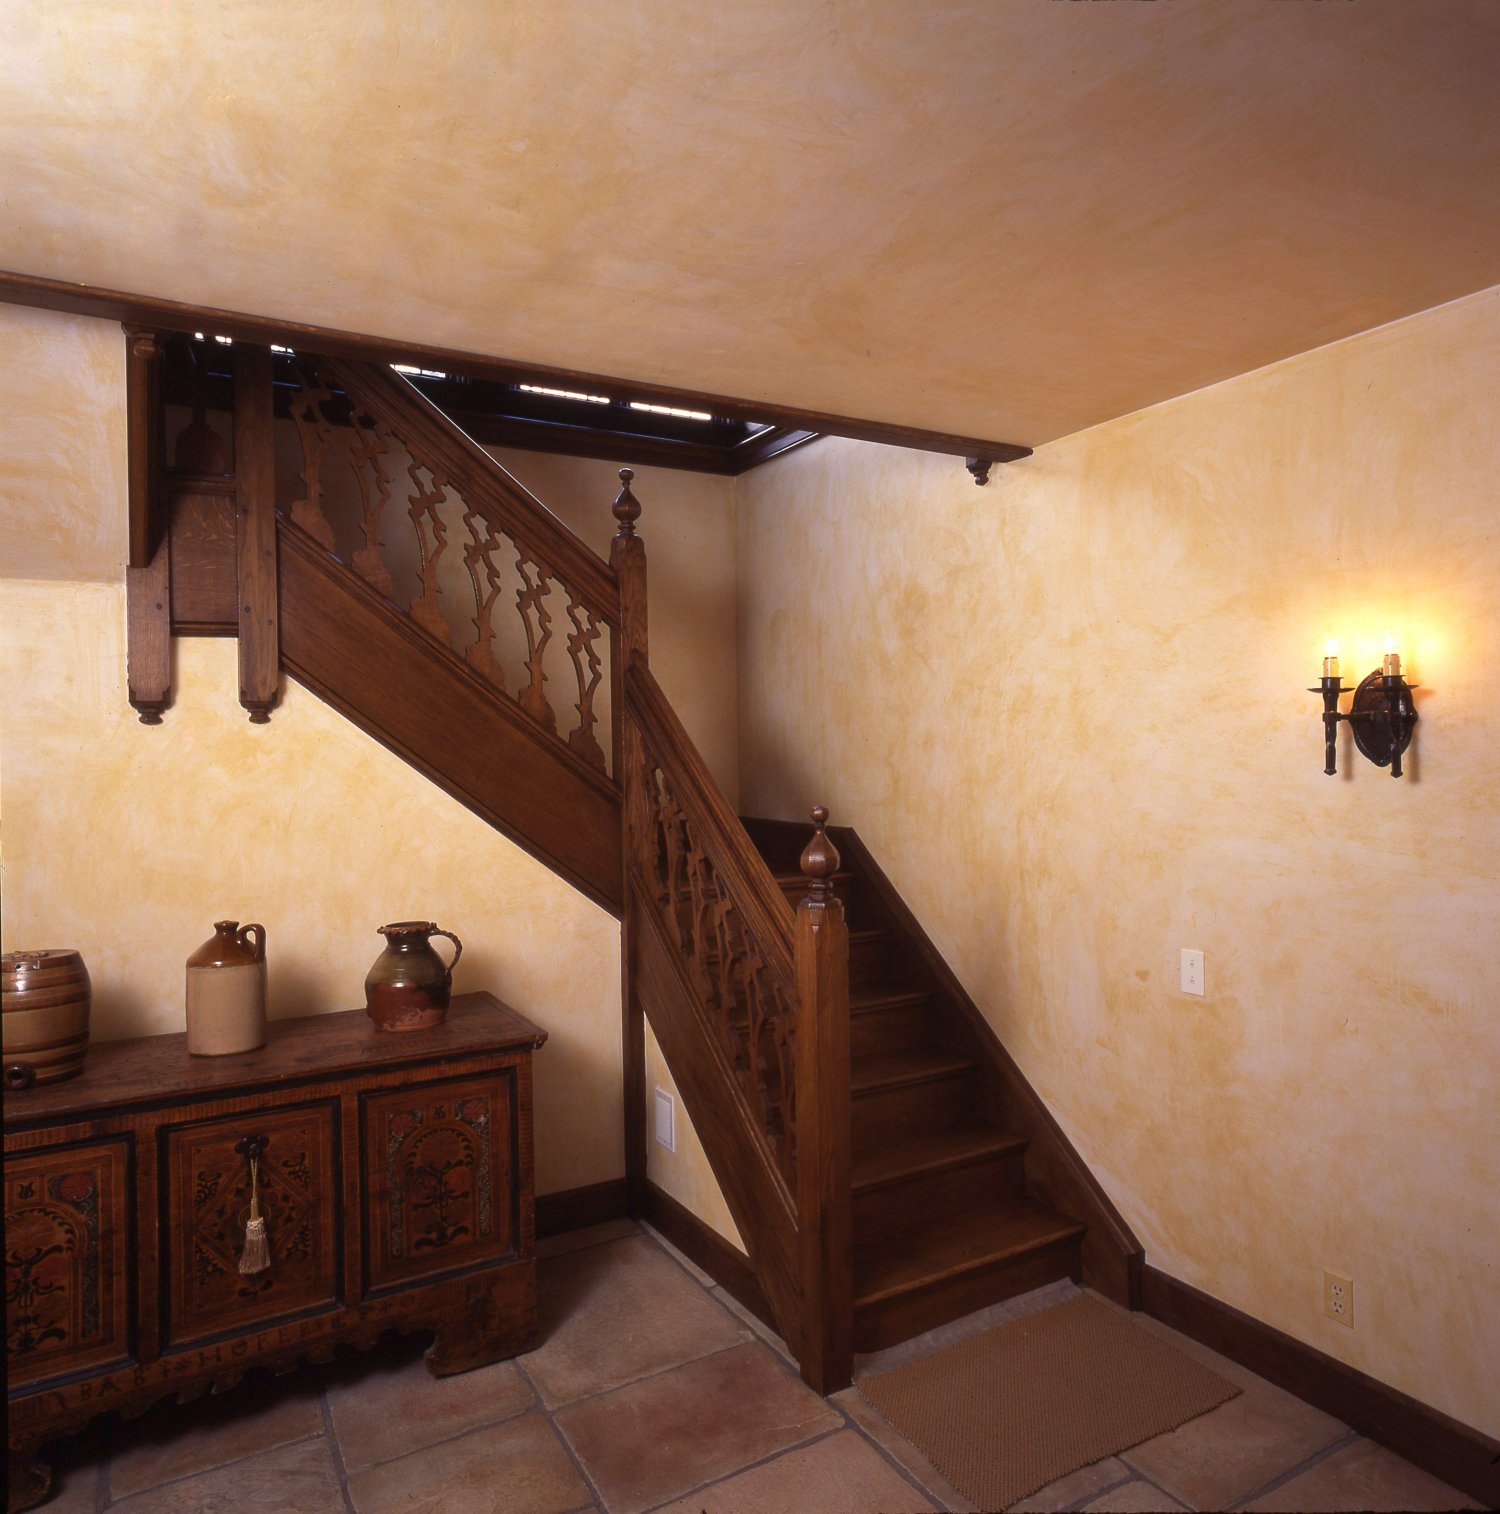 Cellar staircase